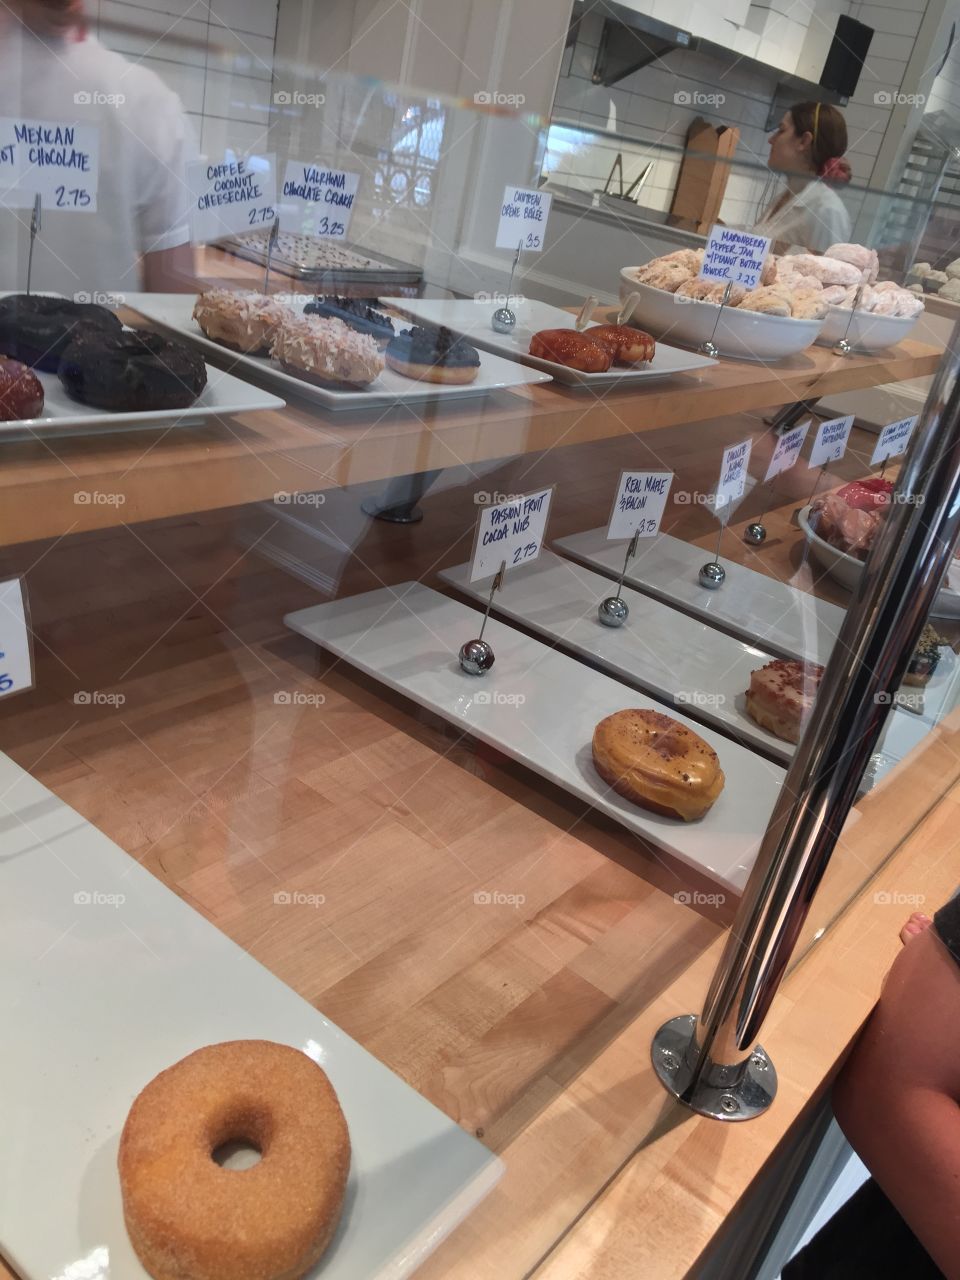 Mmmm Donuts! 